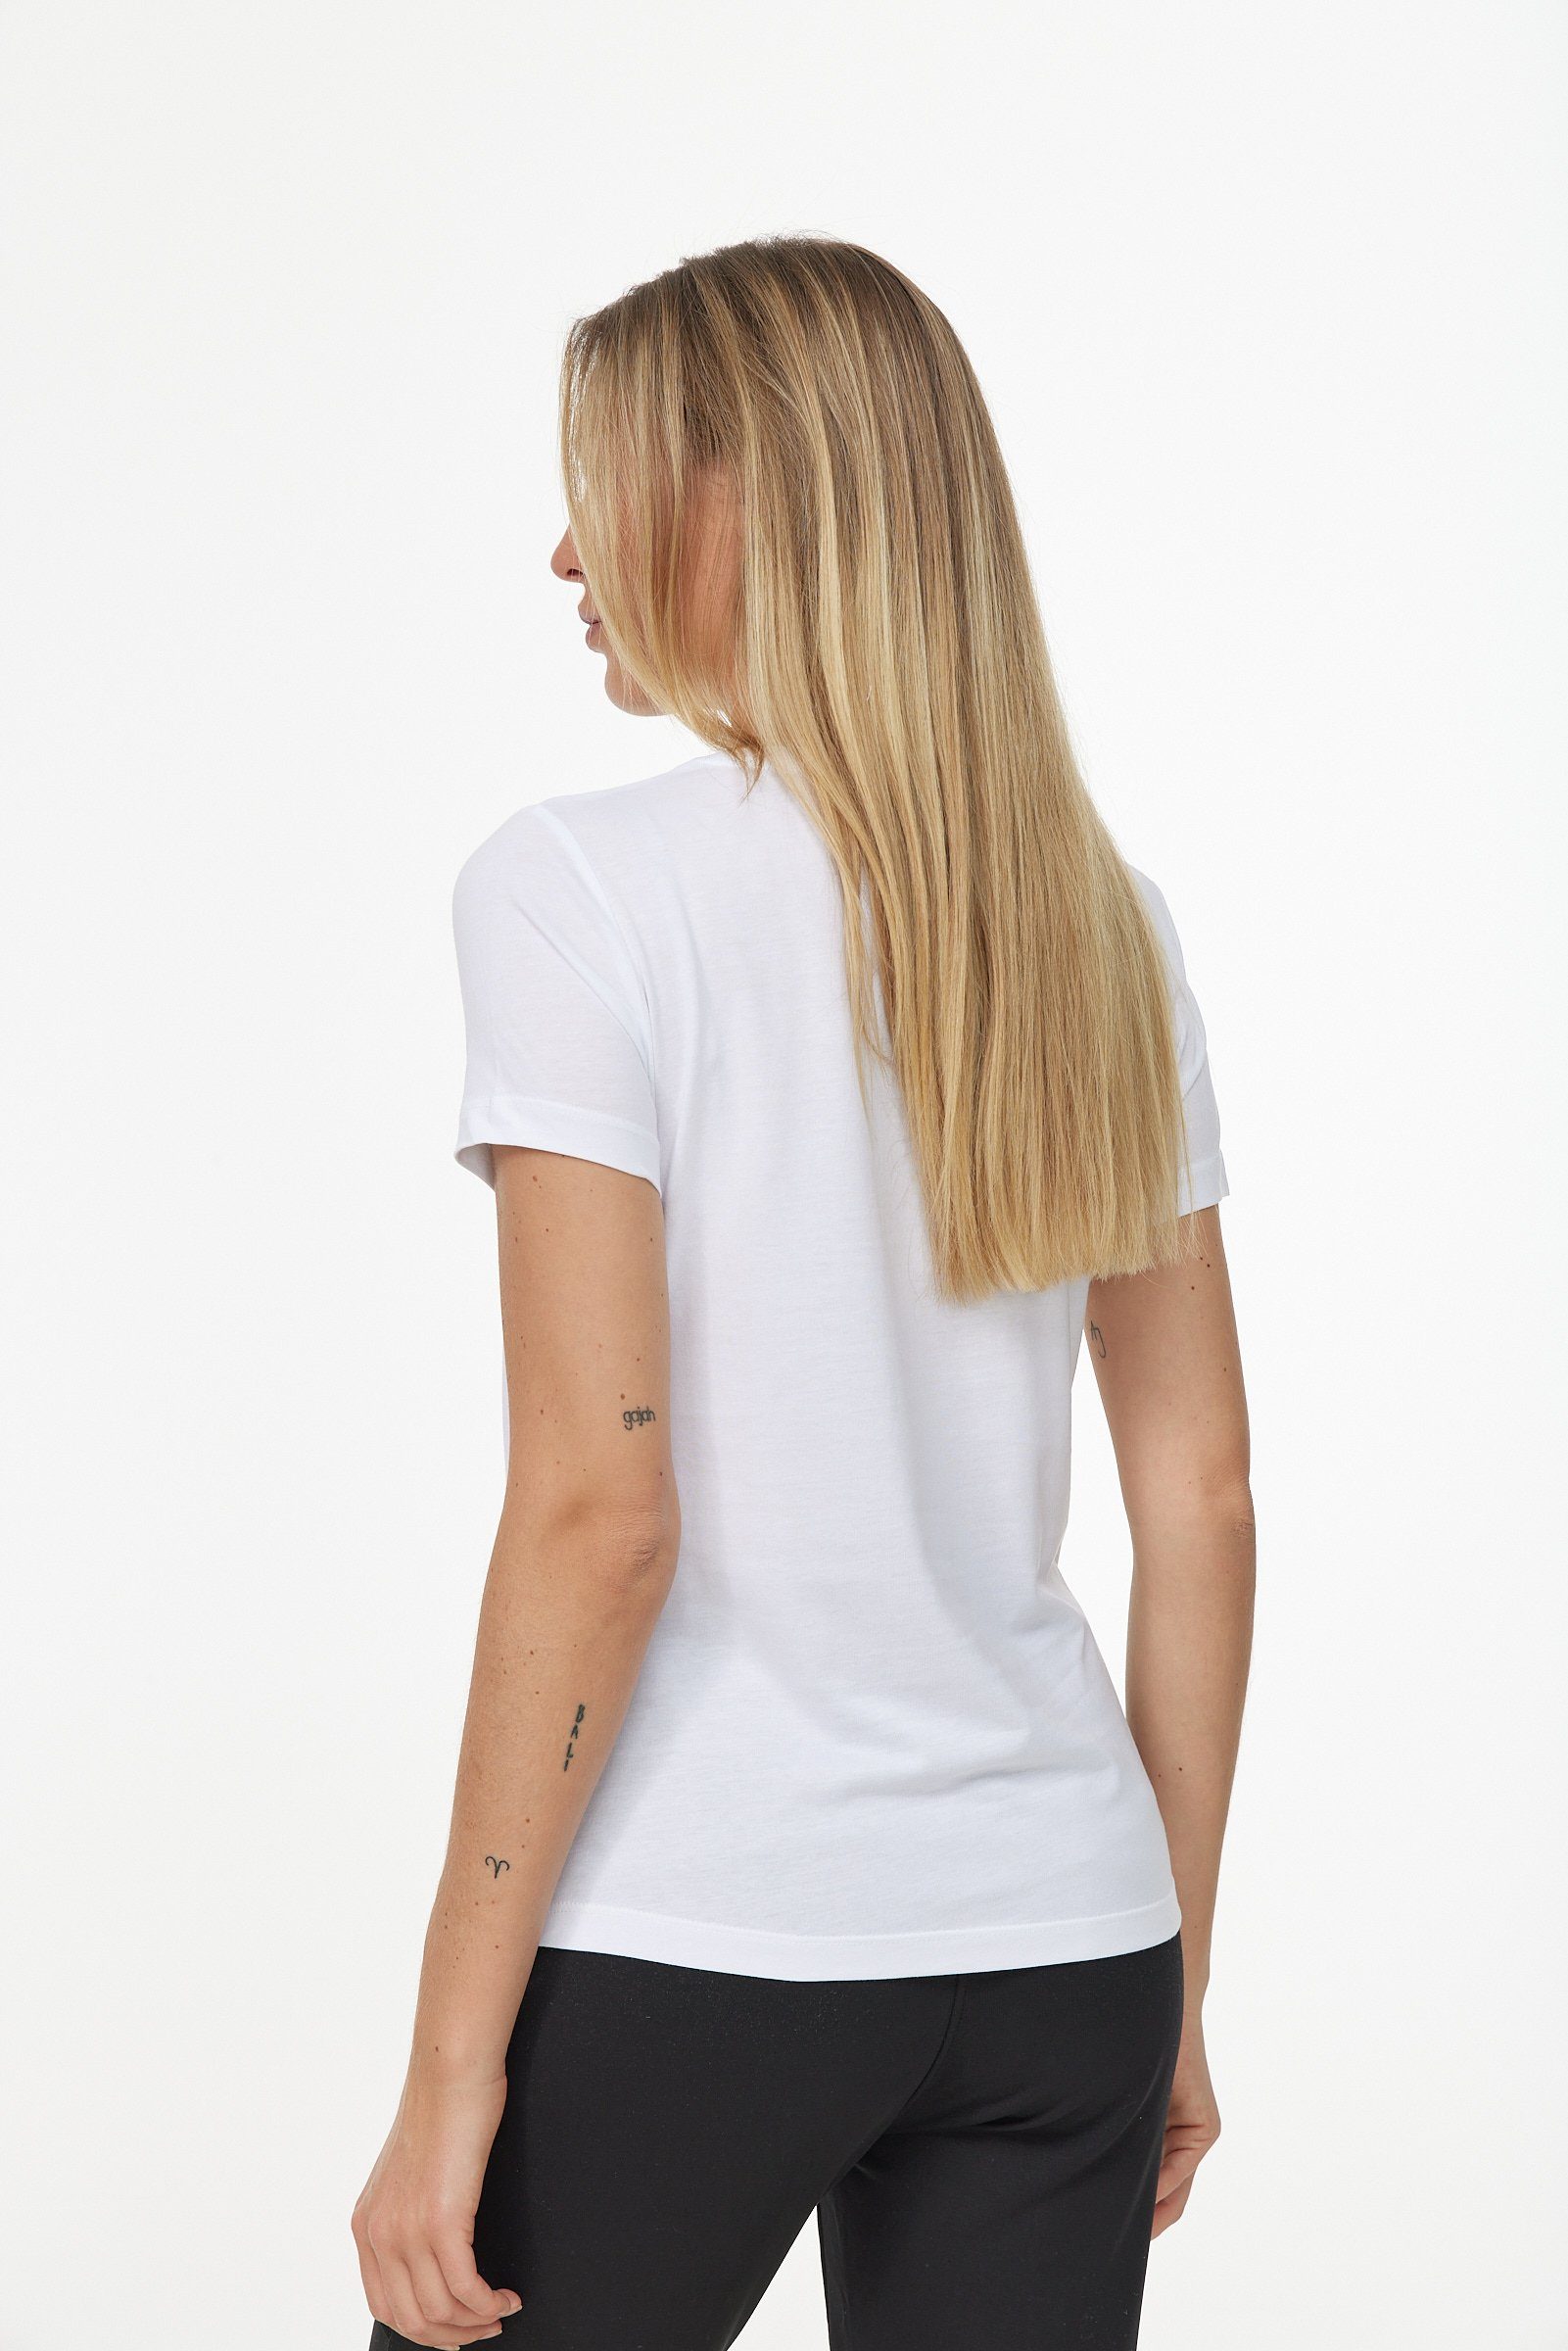 T-Shirt Decay in weiß-schwarz Design schlichtem